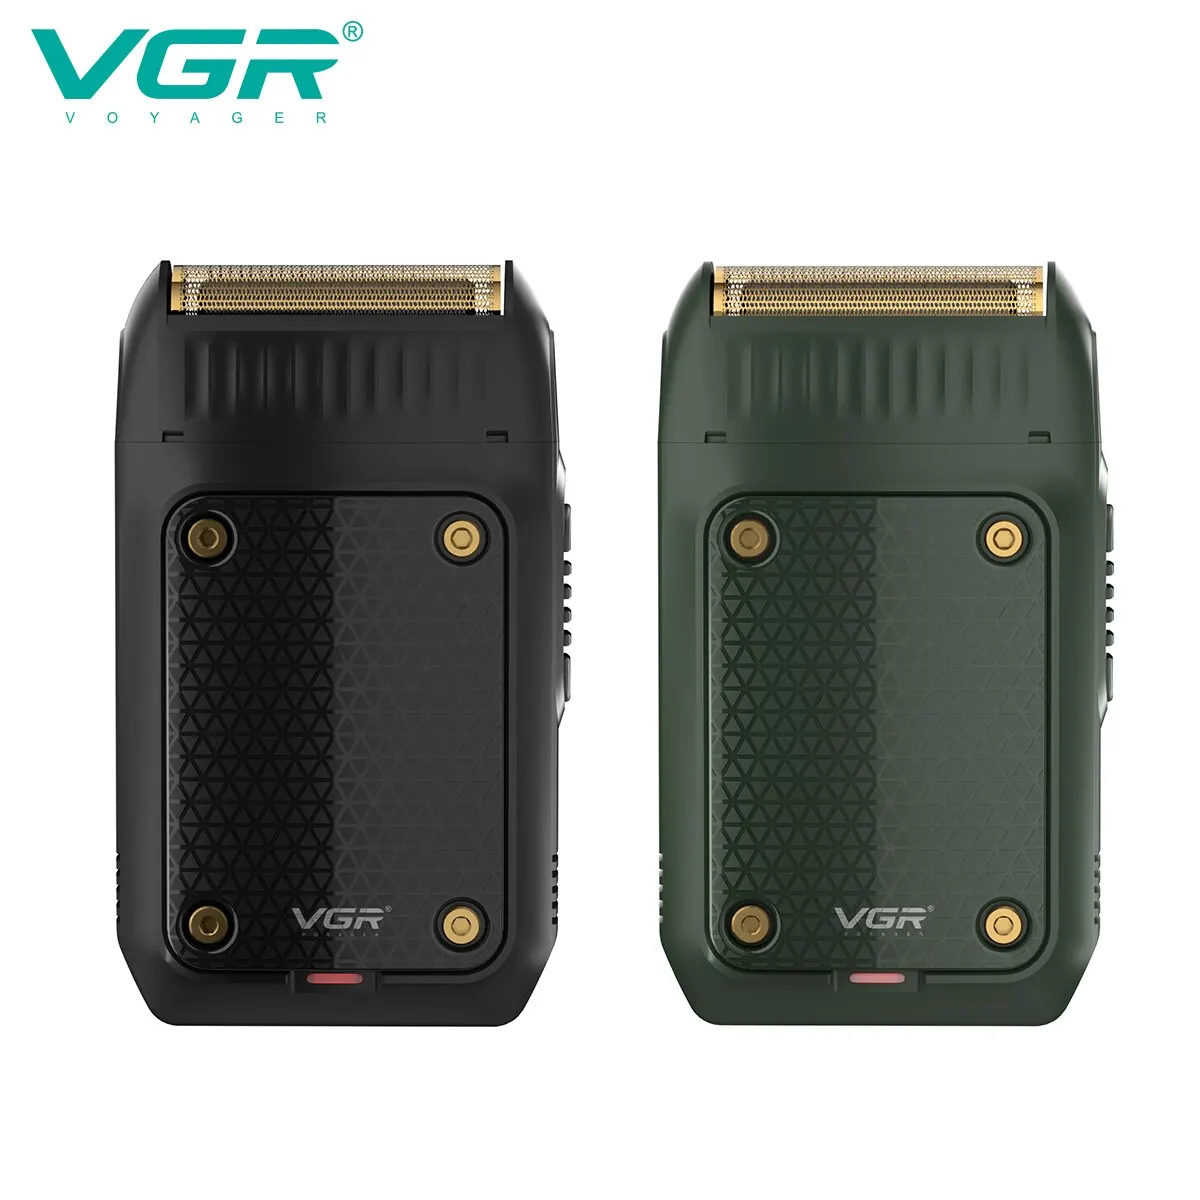 VGR Shaver Профессиональная бритва Электрический станок для бритья Портативный Триммер для бороды Перезаряжаемая бритва Мини-бритва для мужчин V-353